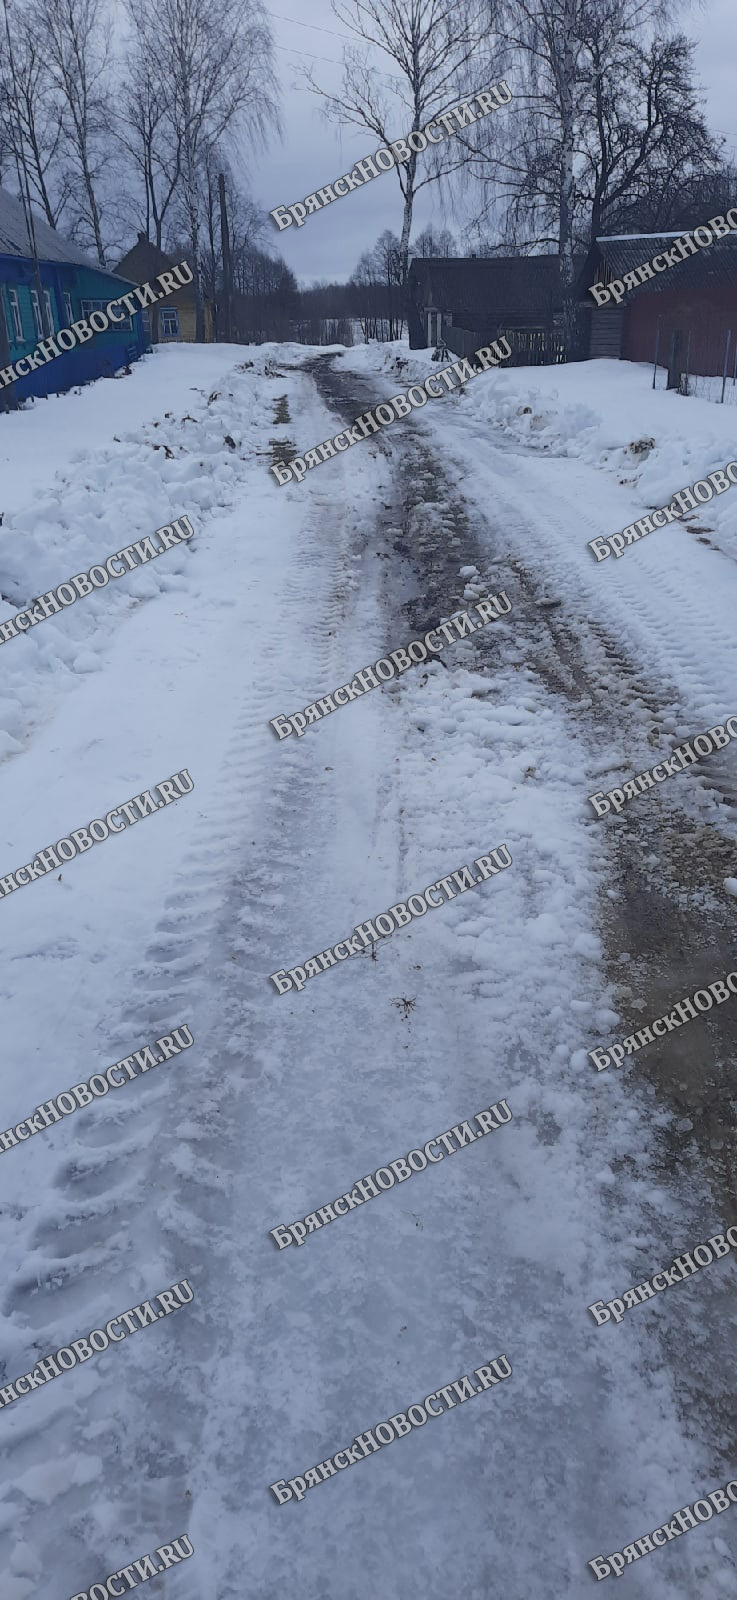 После порции критики суражскую деревню вычистили от снега